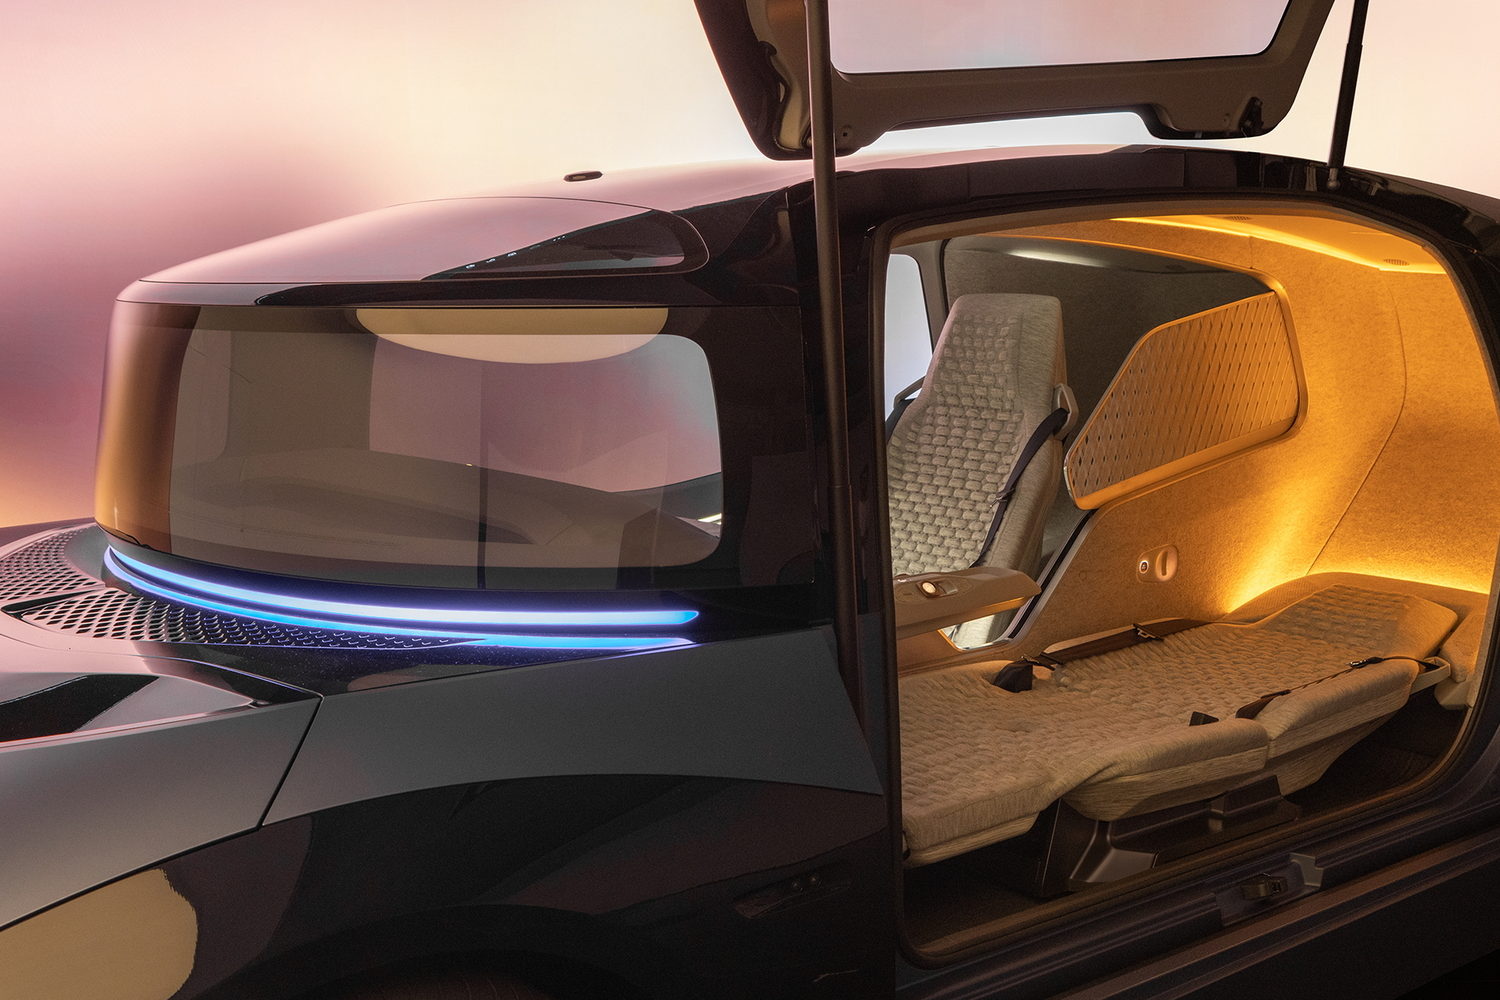 Volkswagen shows driverless future